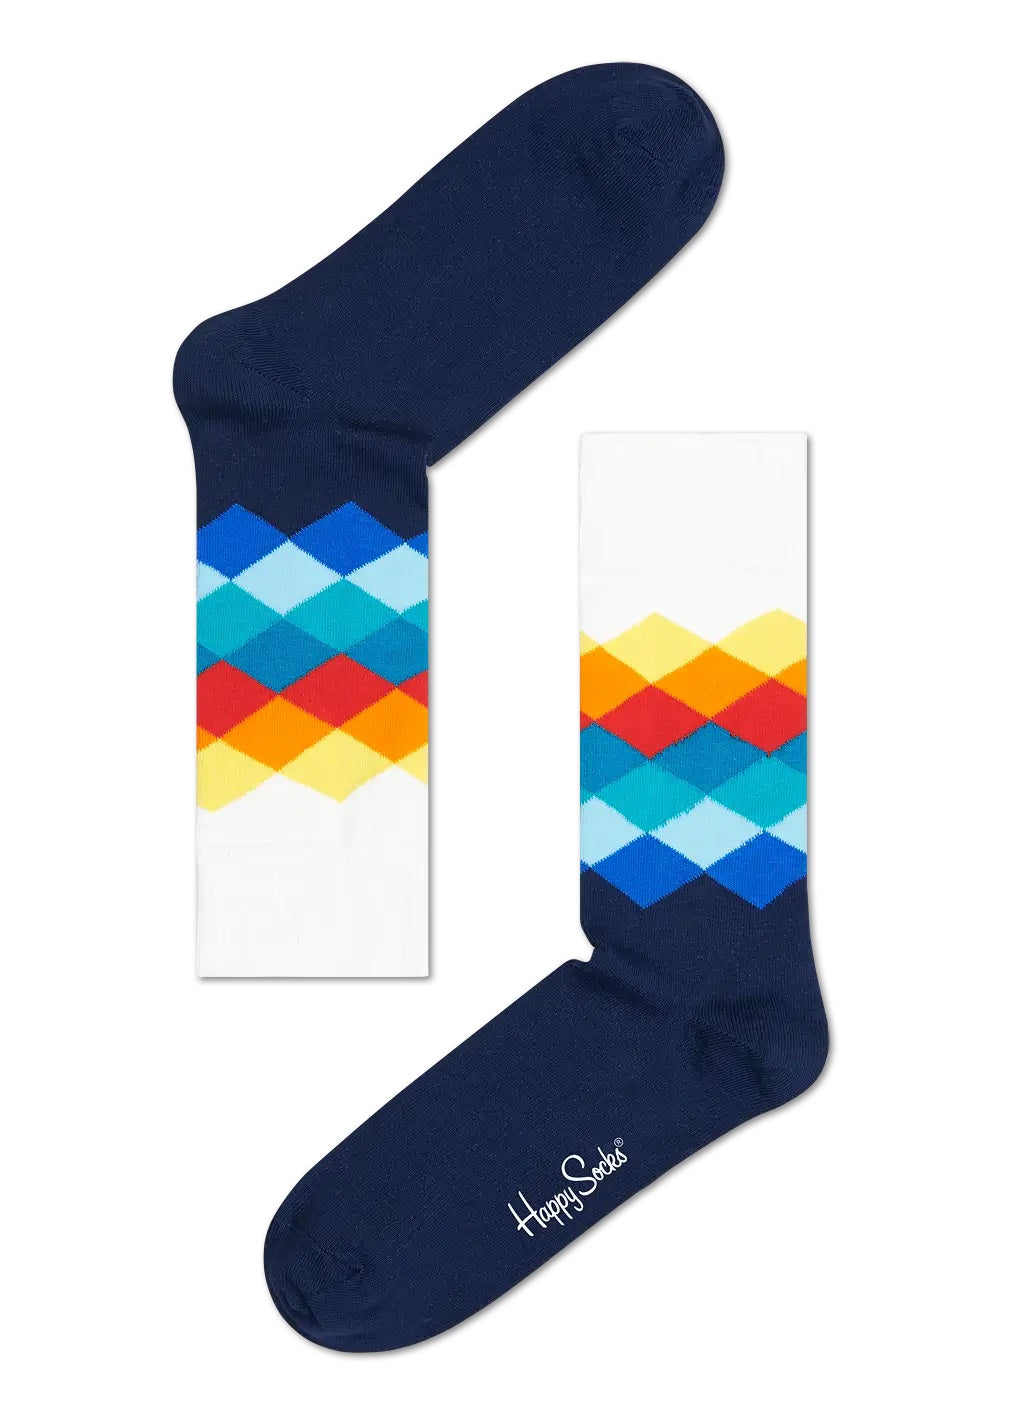 Mens Happy Socks Multi-Colour Gift Set - 4 Pack, 03, Xmix09-6050, Multi-Colour Gift Set